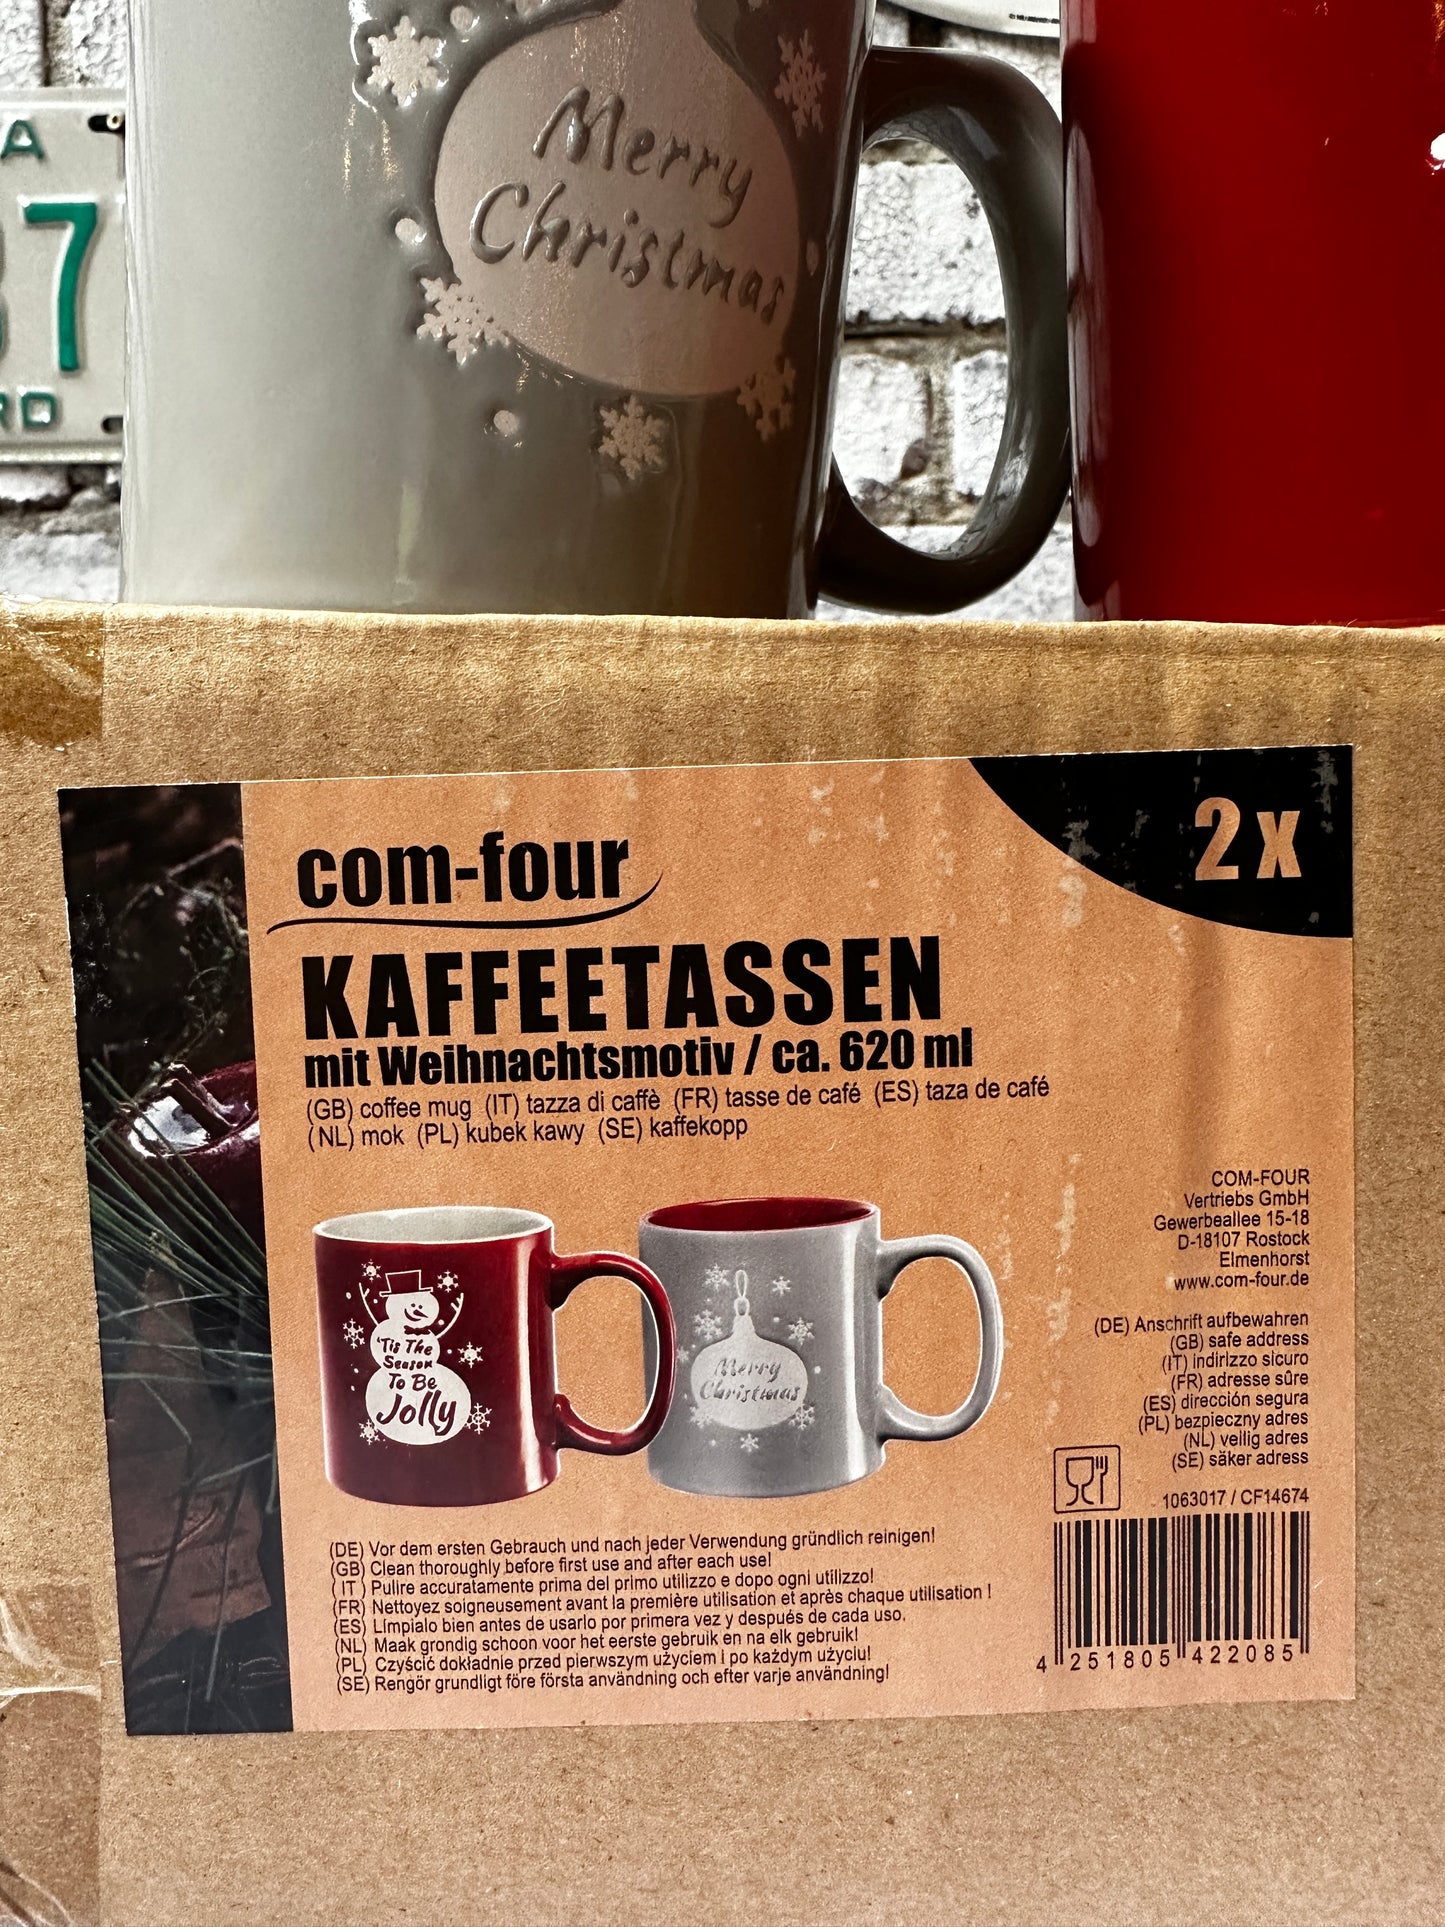 Kaffeetassen Com-Four